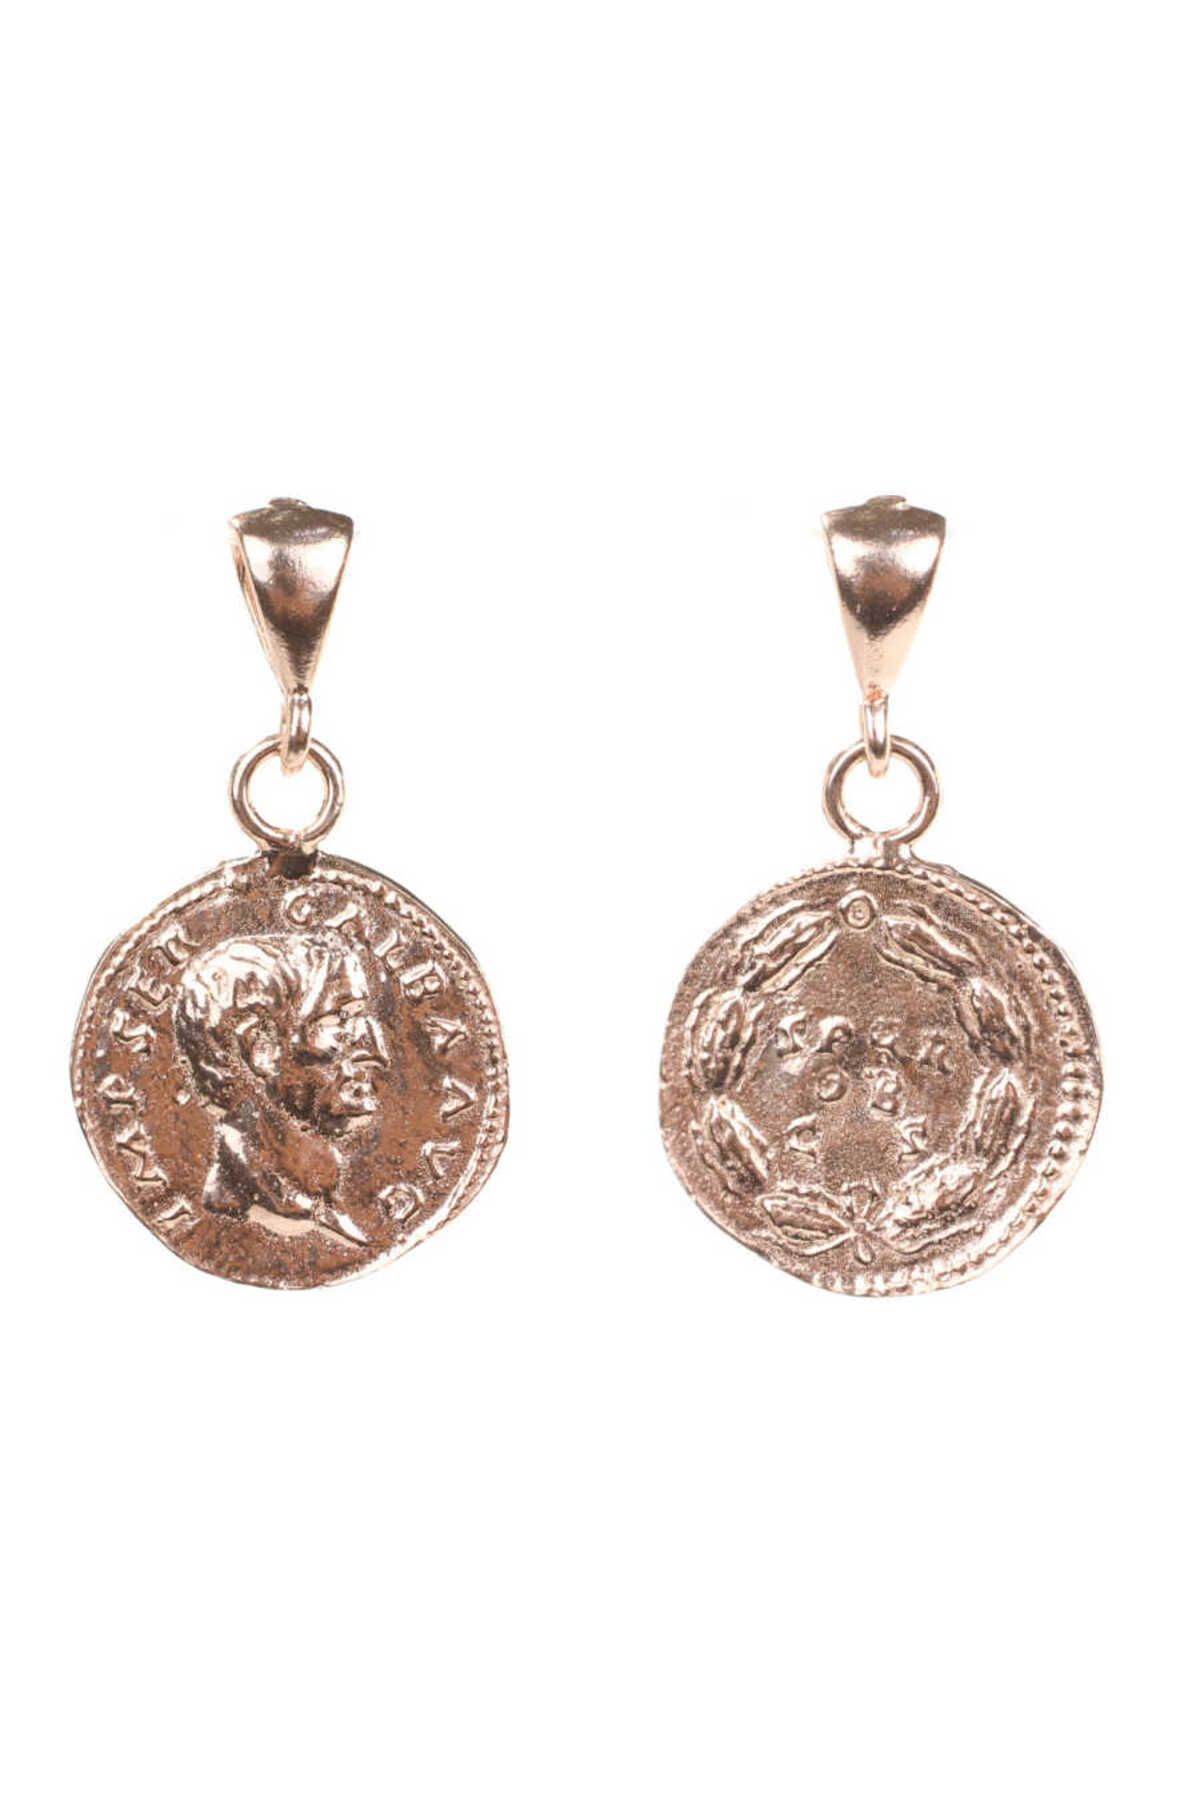 Nusret Takı 925 Ayar Gümüş Antik Roma Dönemi Askeri Madalyon Kolye Ucu